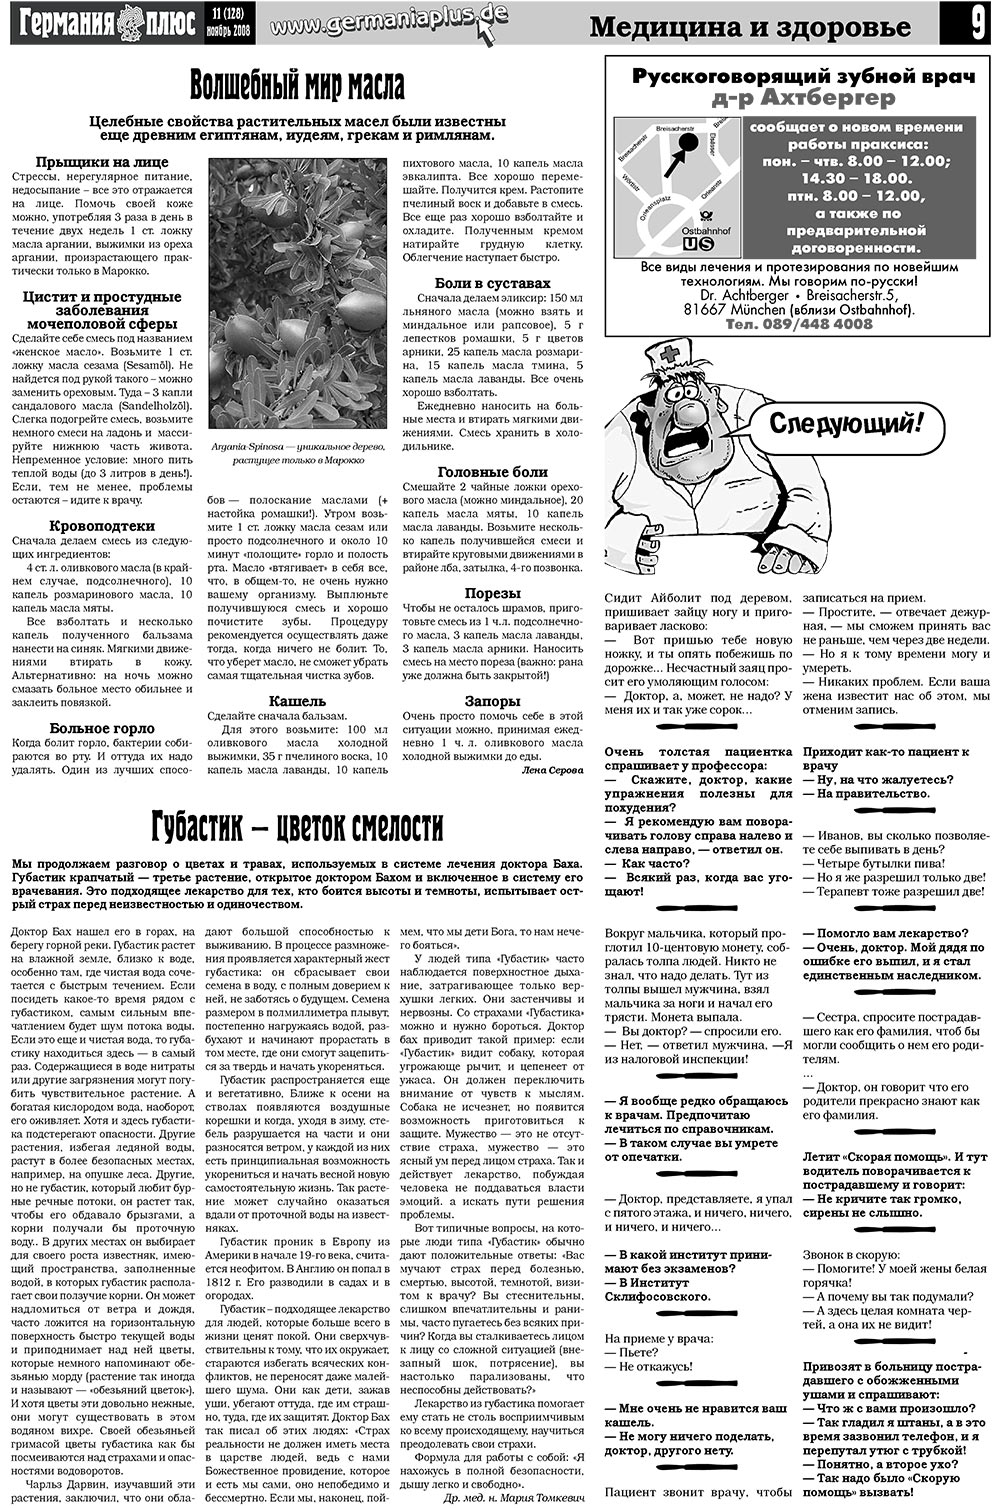 Германия плюс (газета). 2008 год, номер 11, стр. 11